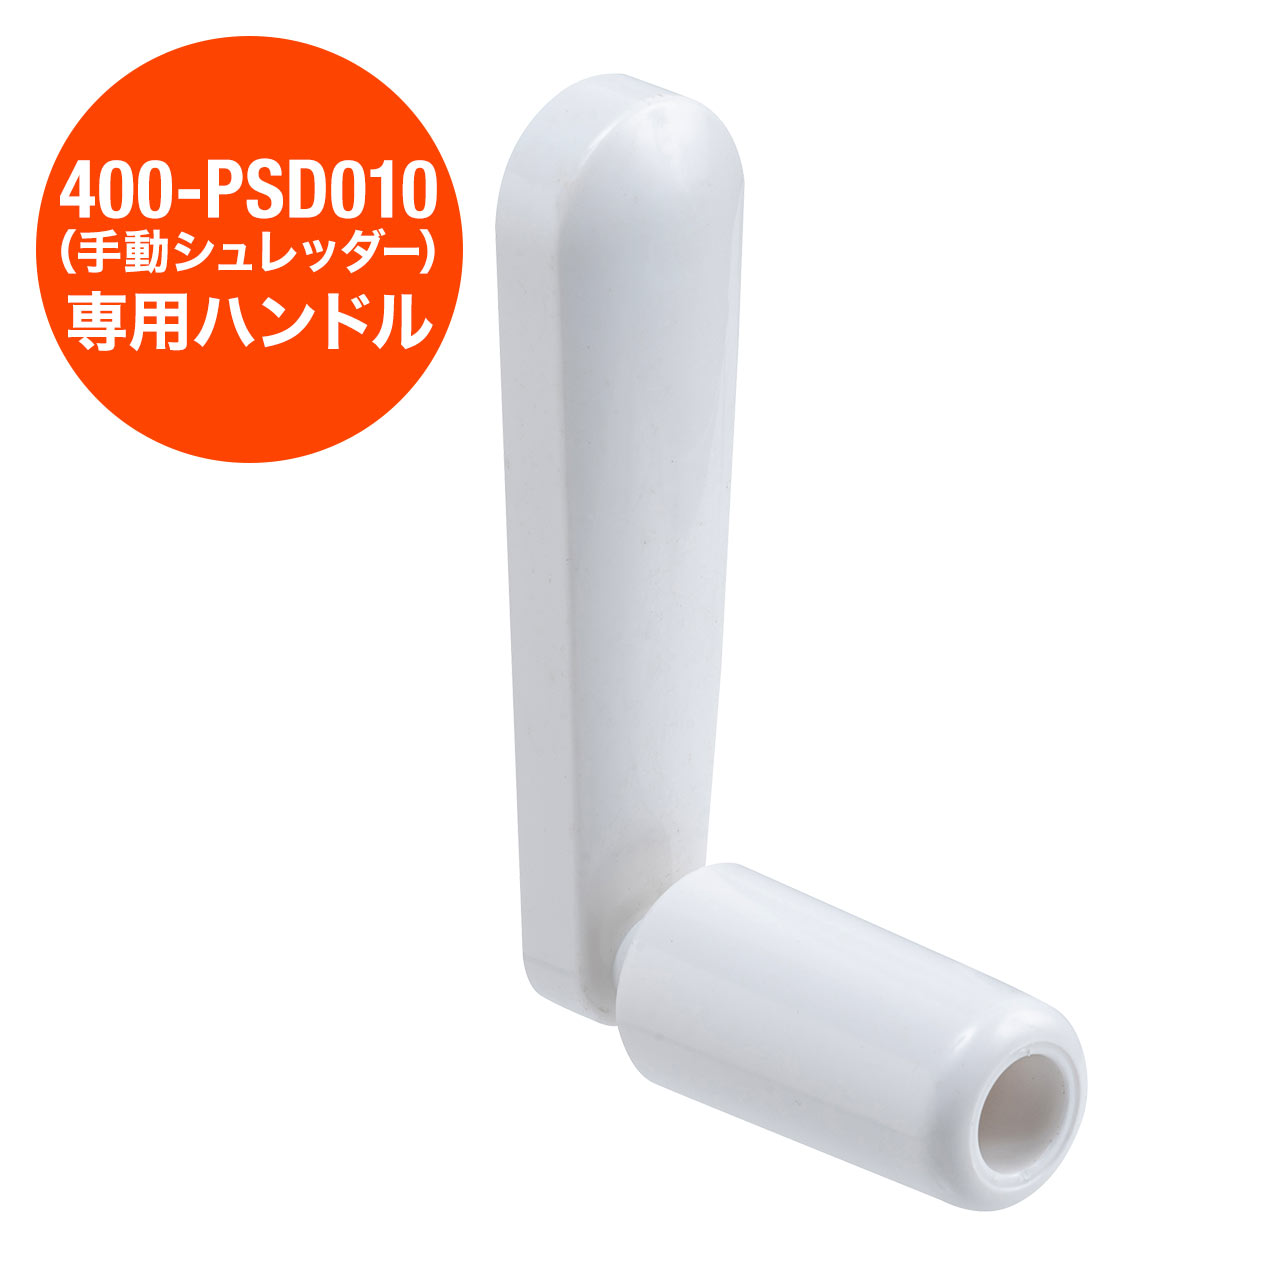 400-PSD010用 手動シュレッダー専用ハンドル LINEショッピング